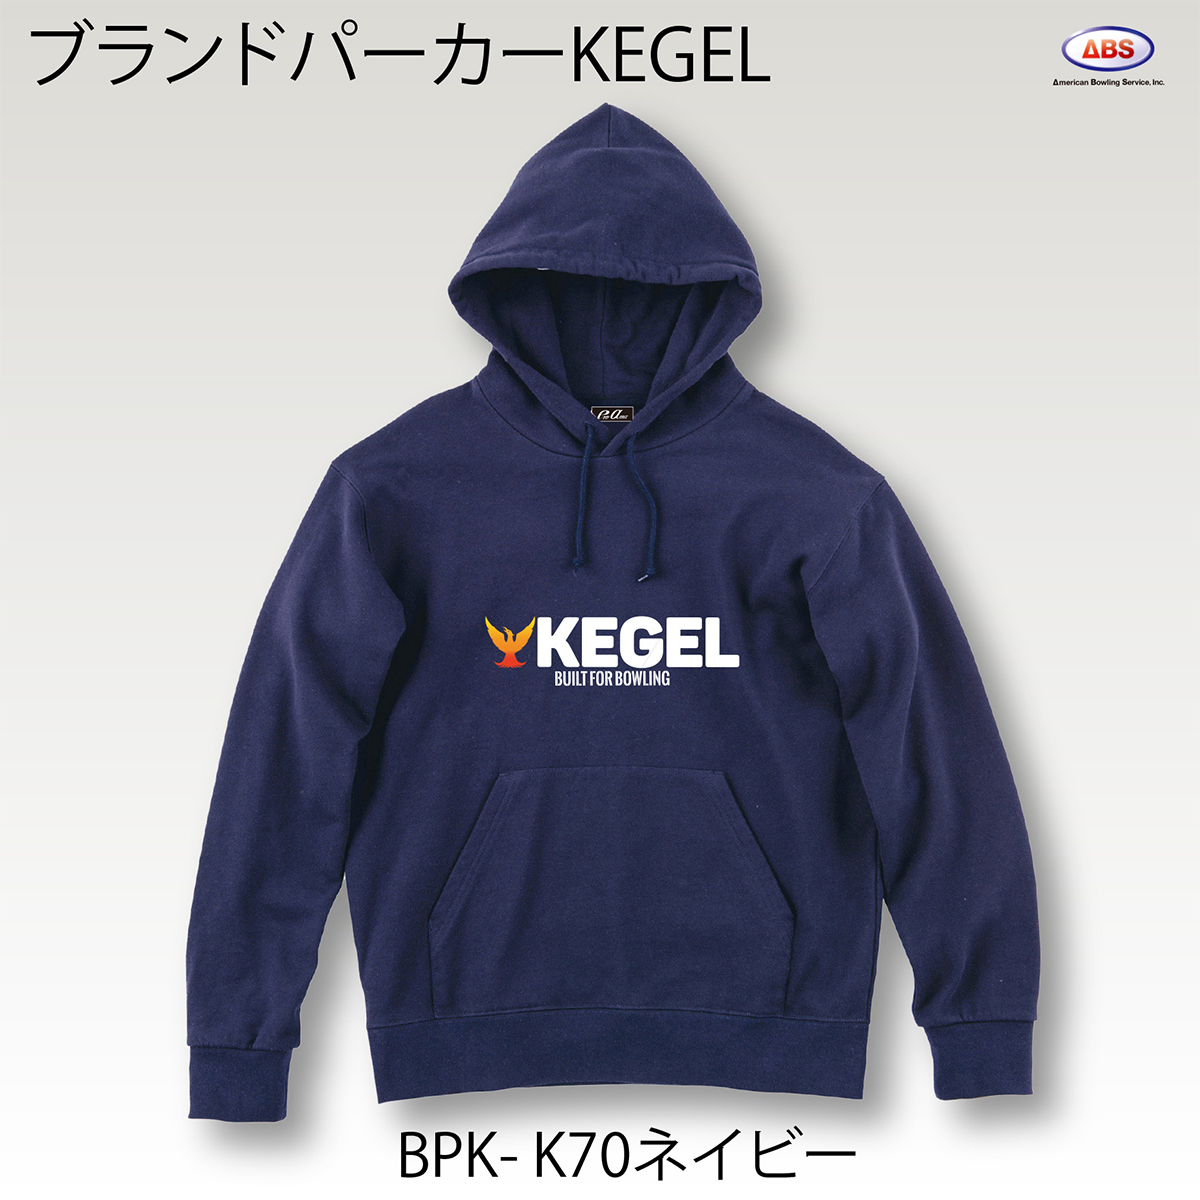 ブランドロゴパーカー(KEGEL) - ウインドウを閉じる